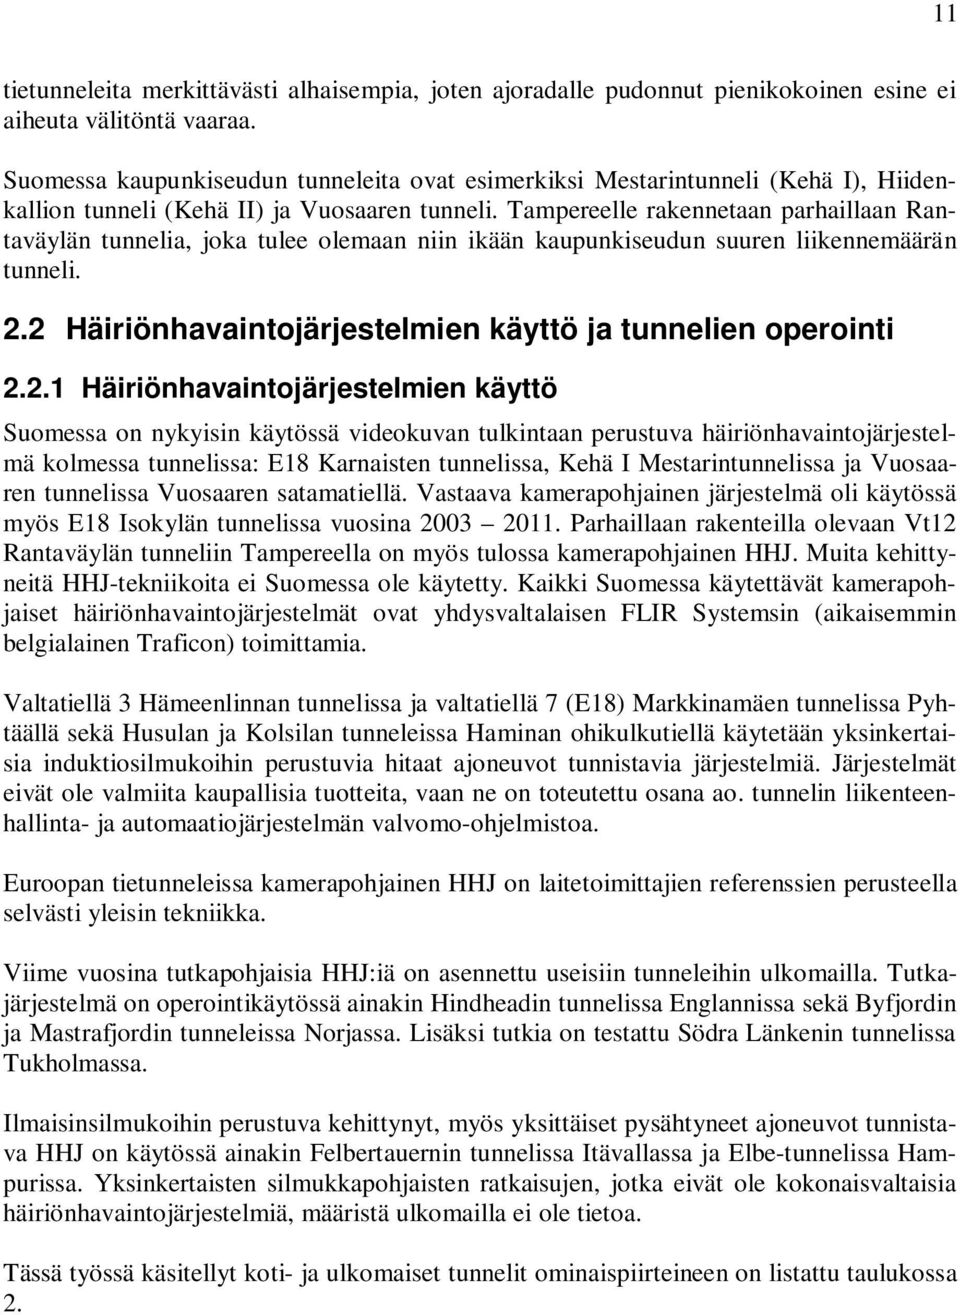 Tampereelle rakennetaan parhaillaan Rantaväylän tunnelia, joka tulee olemaan niin ikään kaupunkiseudun suuren liikennemäärän tunneli. 2.2 Häiriönhavaintojärjestelmien käyttö ja tunnelien operointi 2.